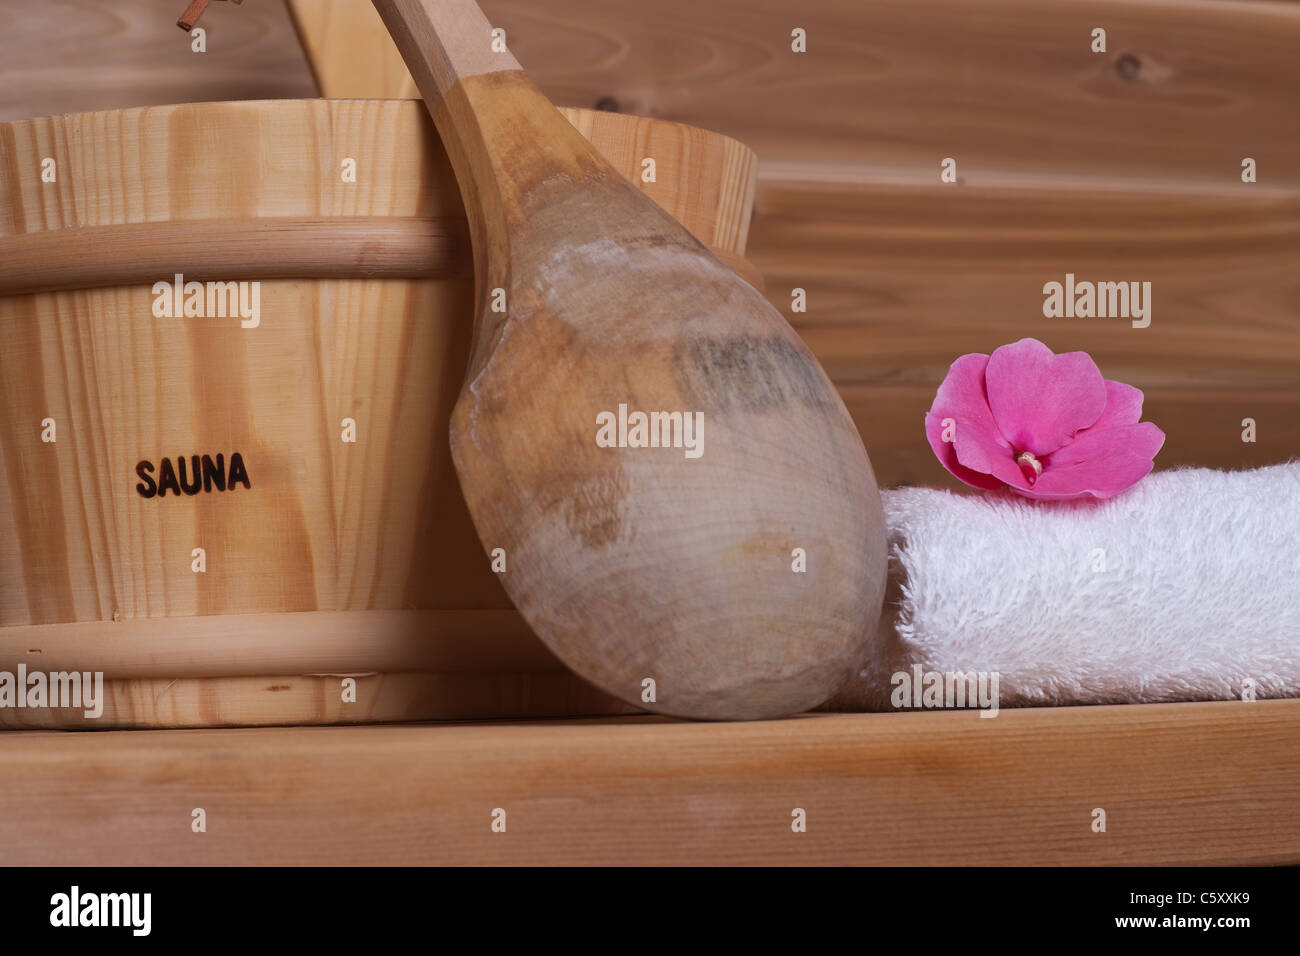 Asciugamano bianco con fiore sulla parte superiore vicino alla benna con siviera in una sauna in legno Foto Stock